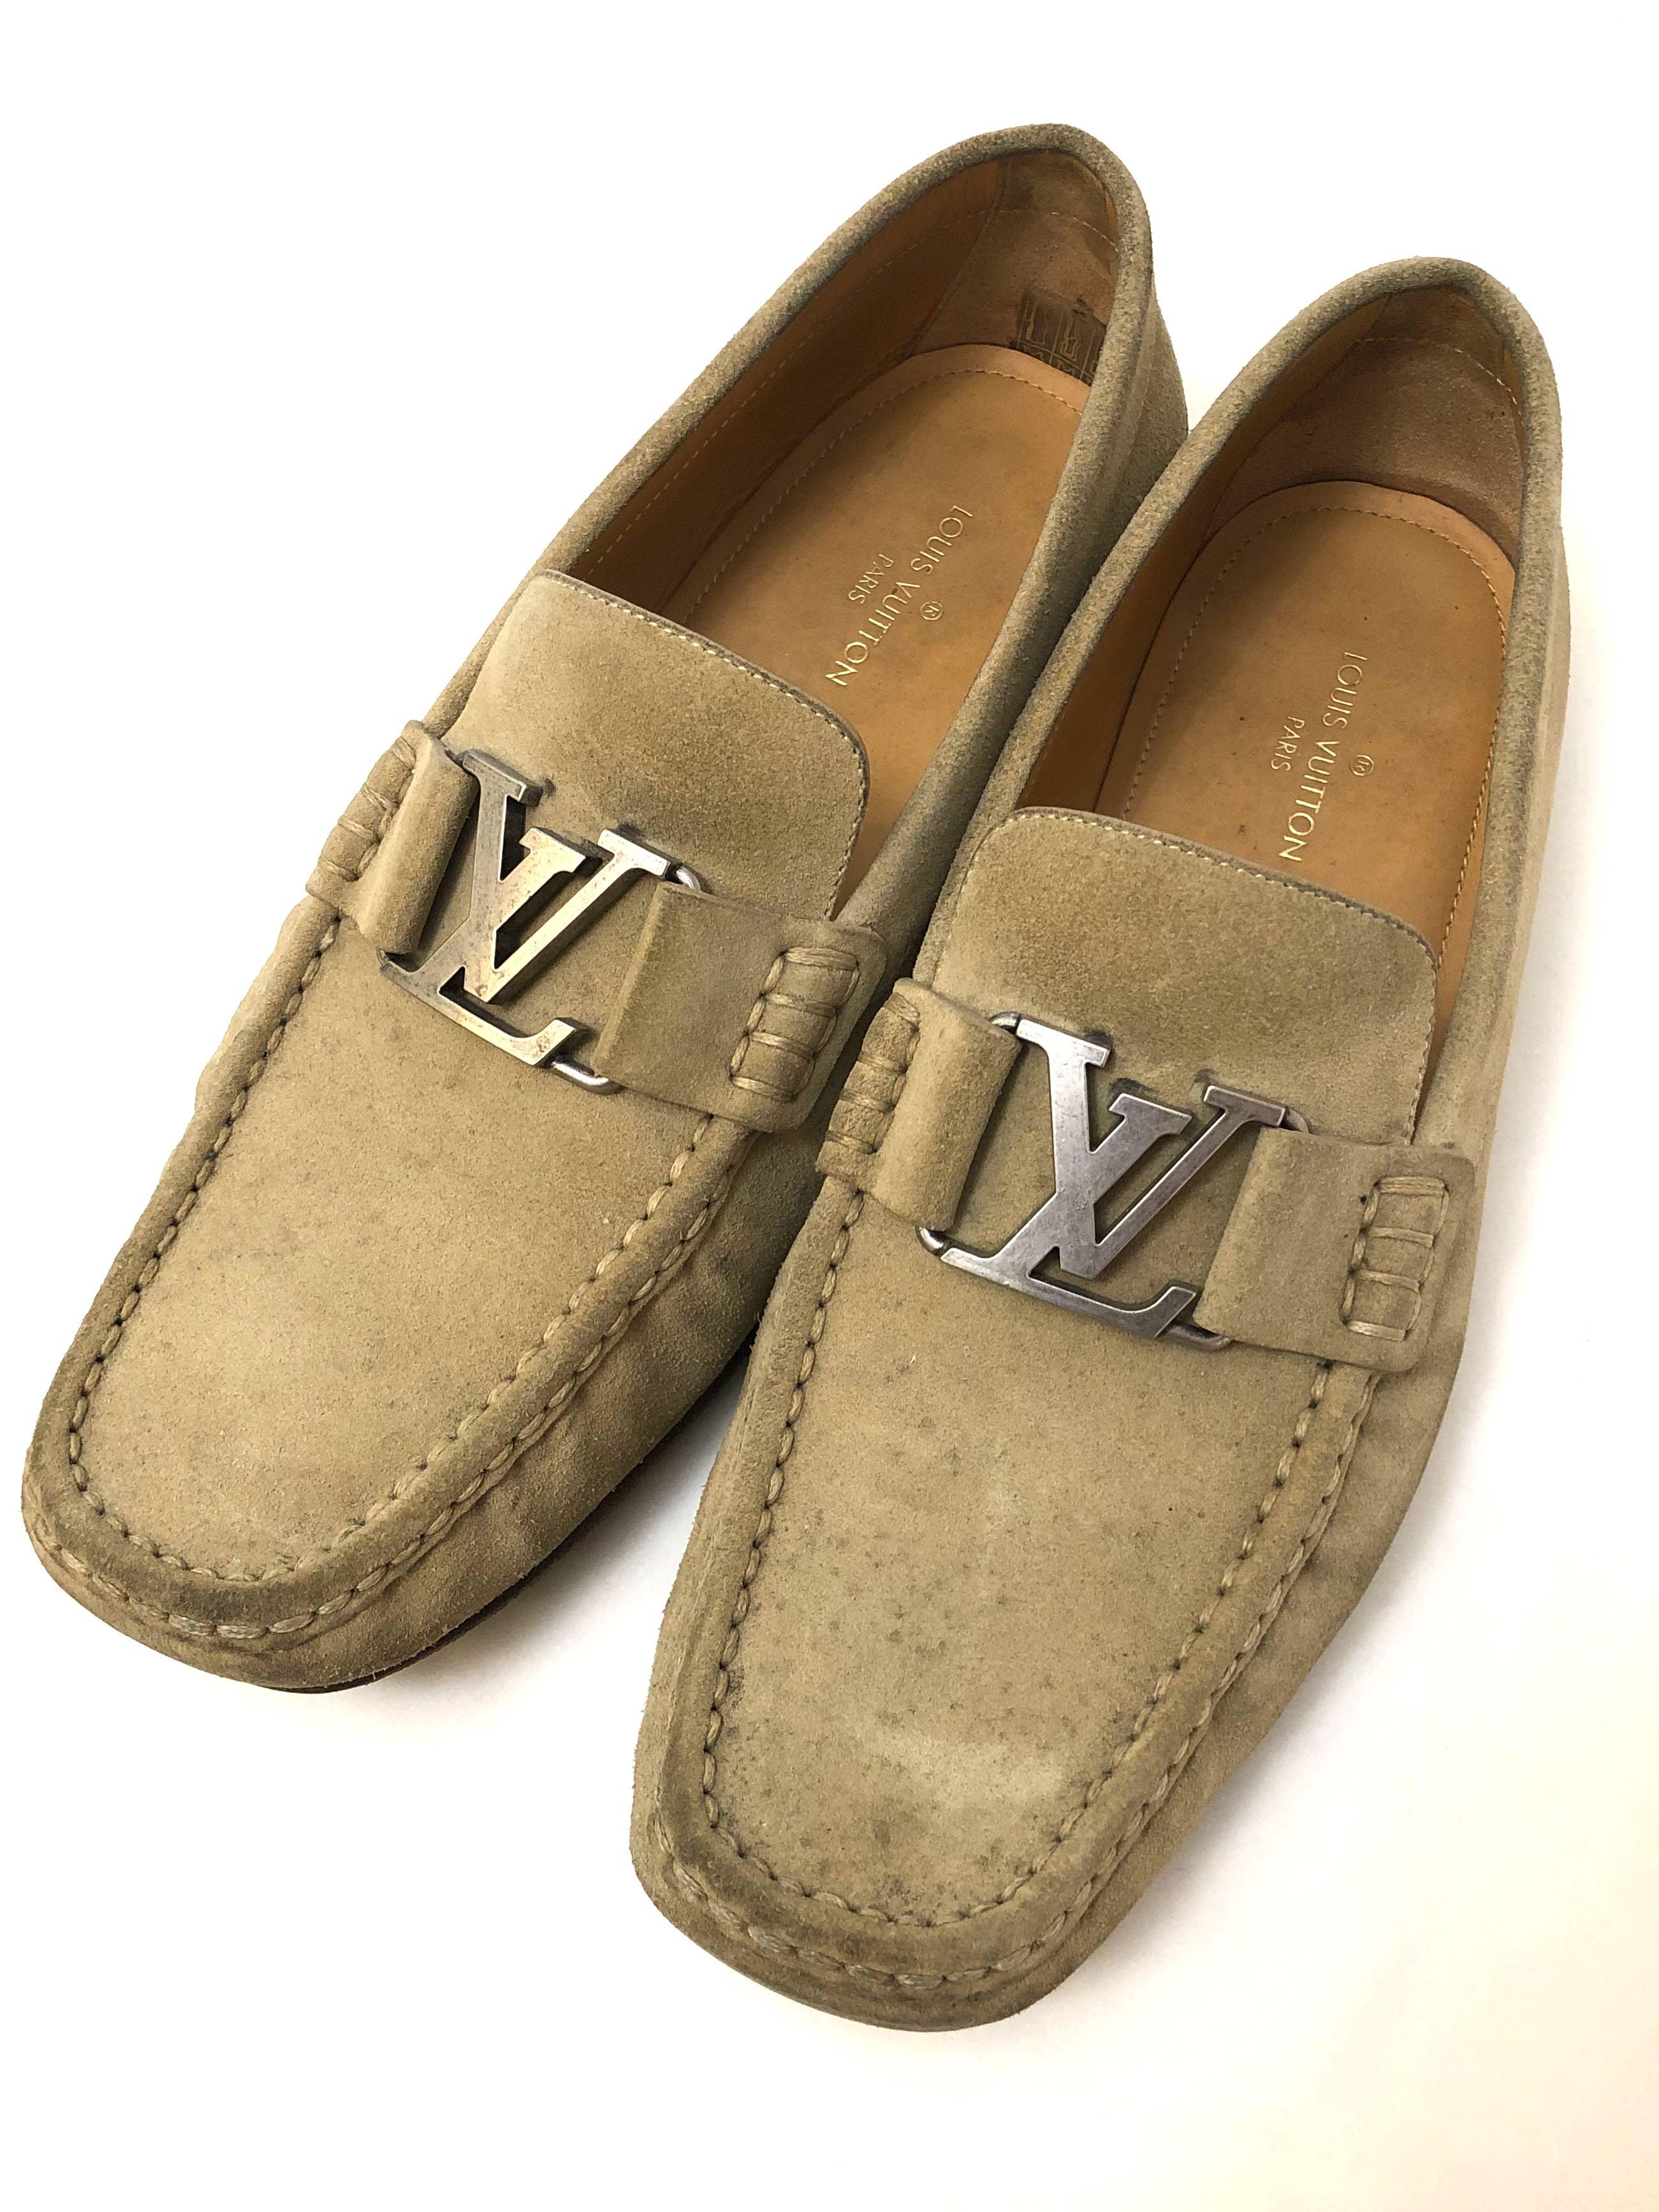 Louis Vuitton Men's Loafers, Luxury, Sneakers & Footwear on Carousell